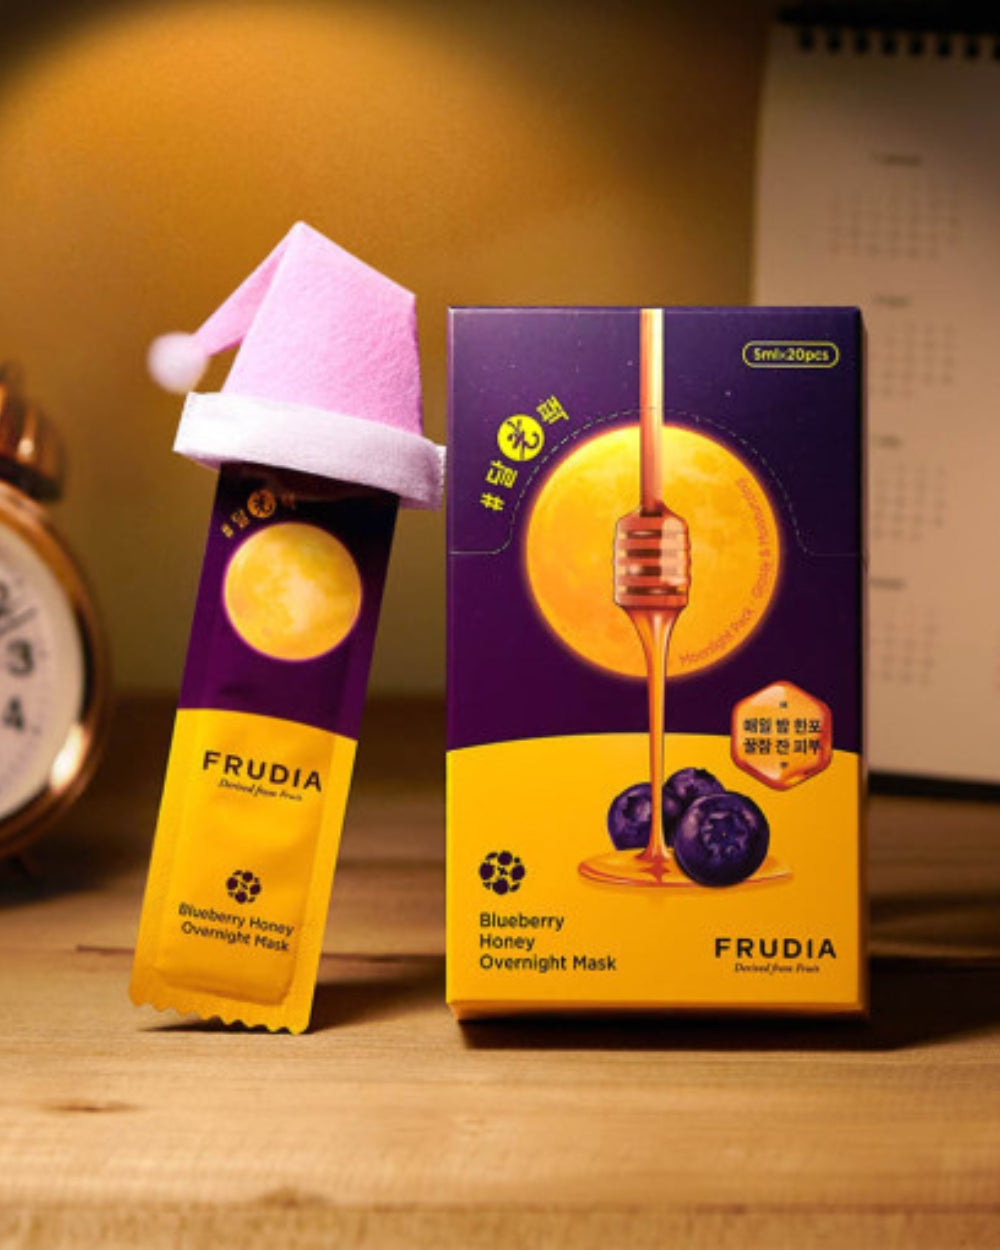 Frudia - Blueberry Honey Overnight Mask